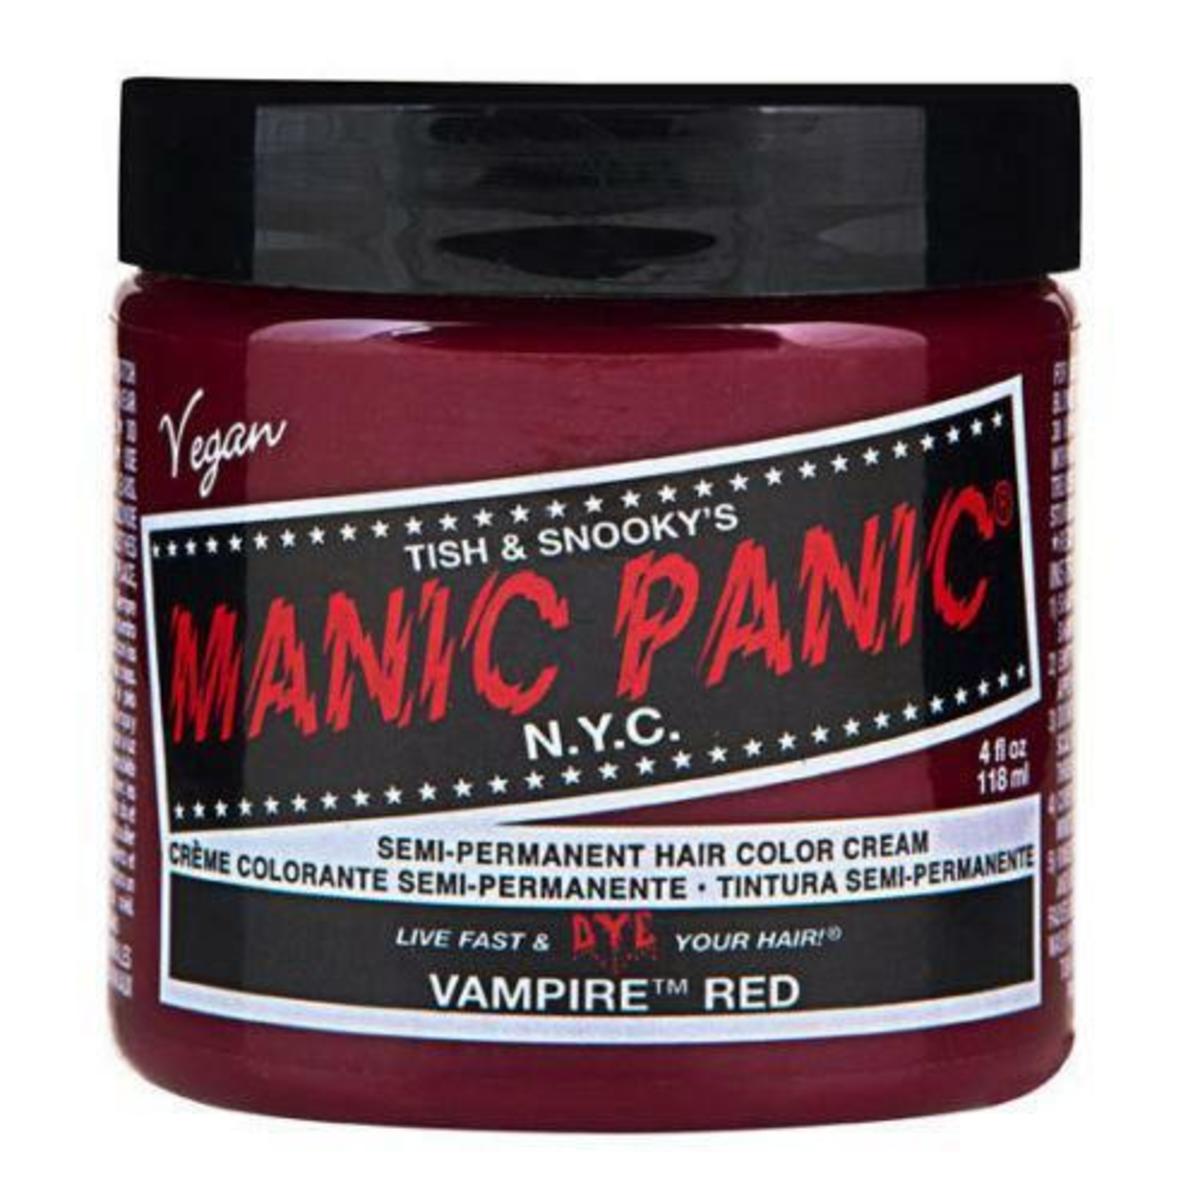 Manic Panic Vampire Red Hair Dye Review